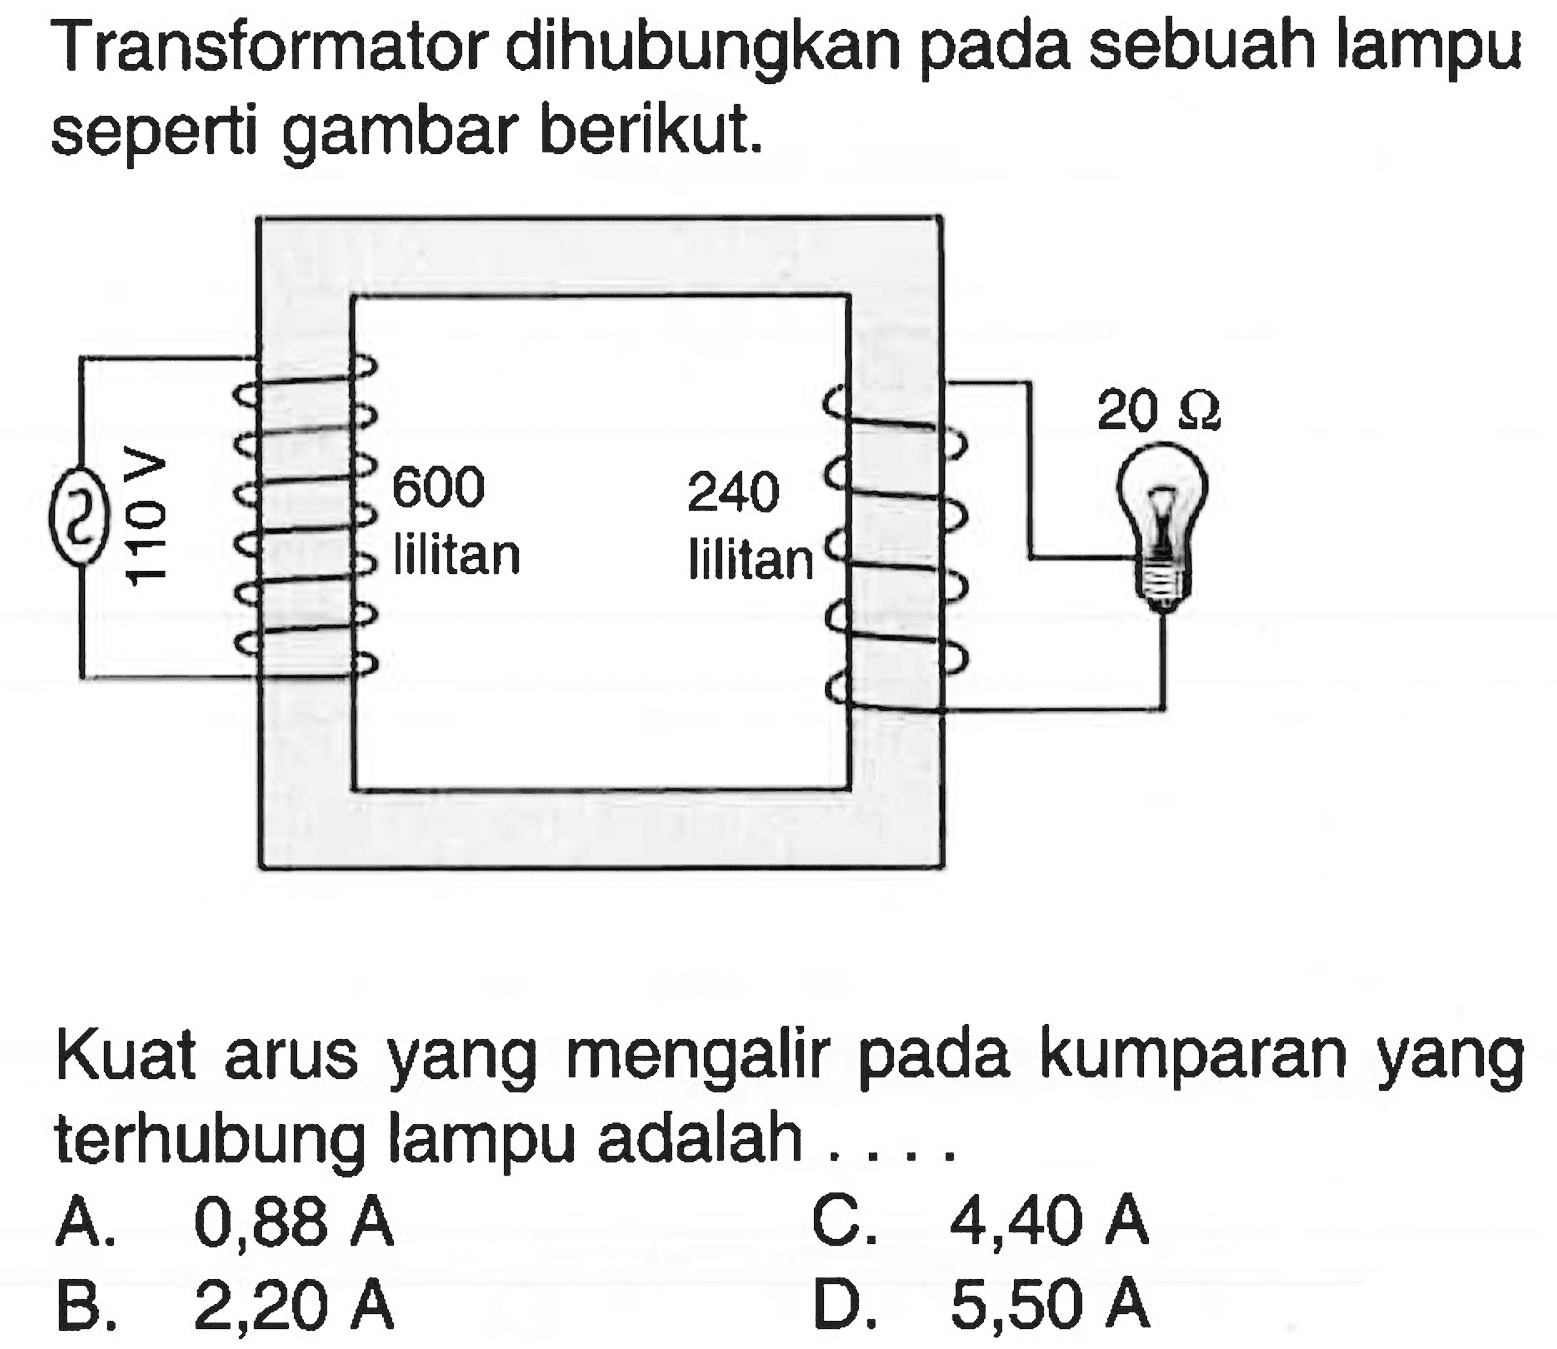 Transformator dihubungkan pada sebuah lampu seperti gambar berikut.110V 600 lilitan 240 lilitan 20 ohm Kuat arus yang mengalir pada kumparan yang terhubung lampu adalah .... 